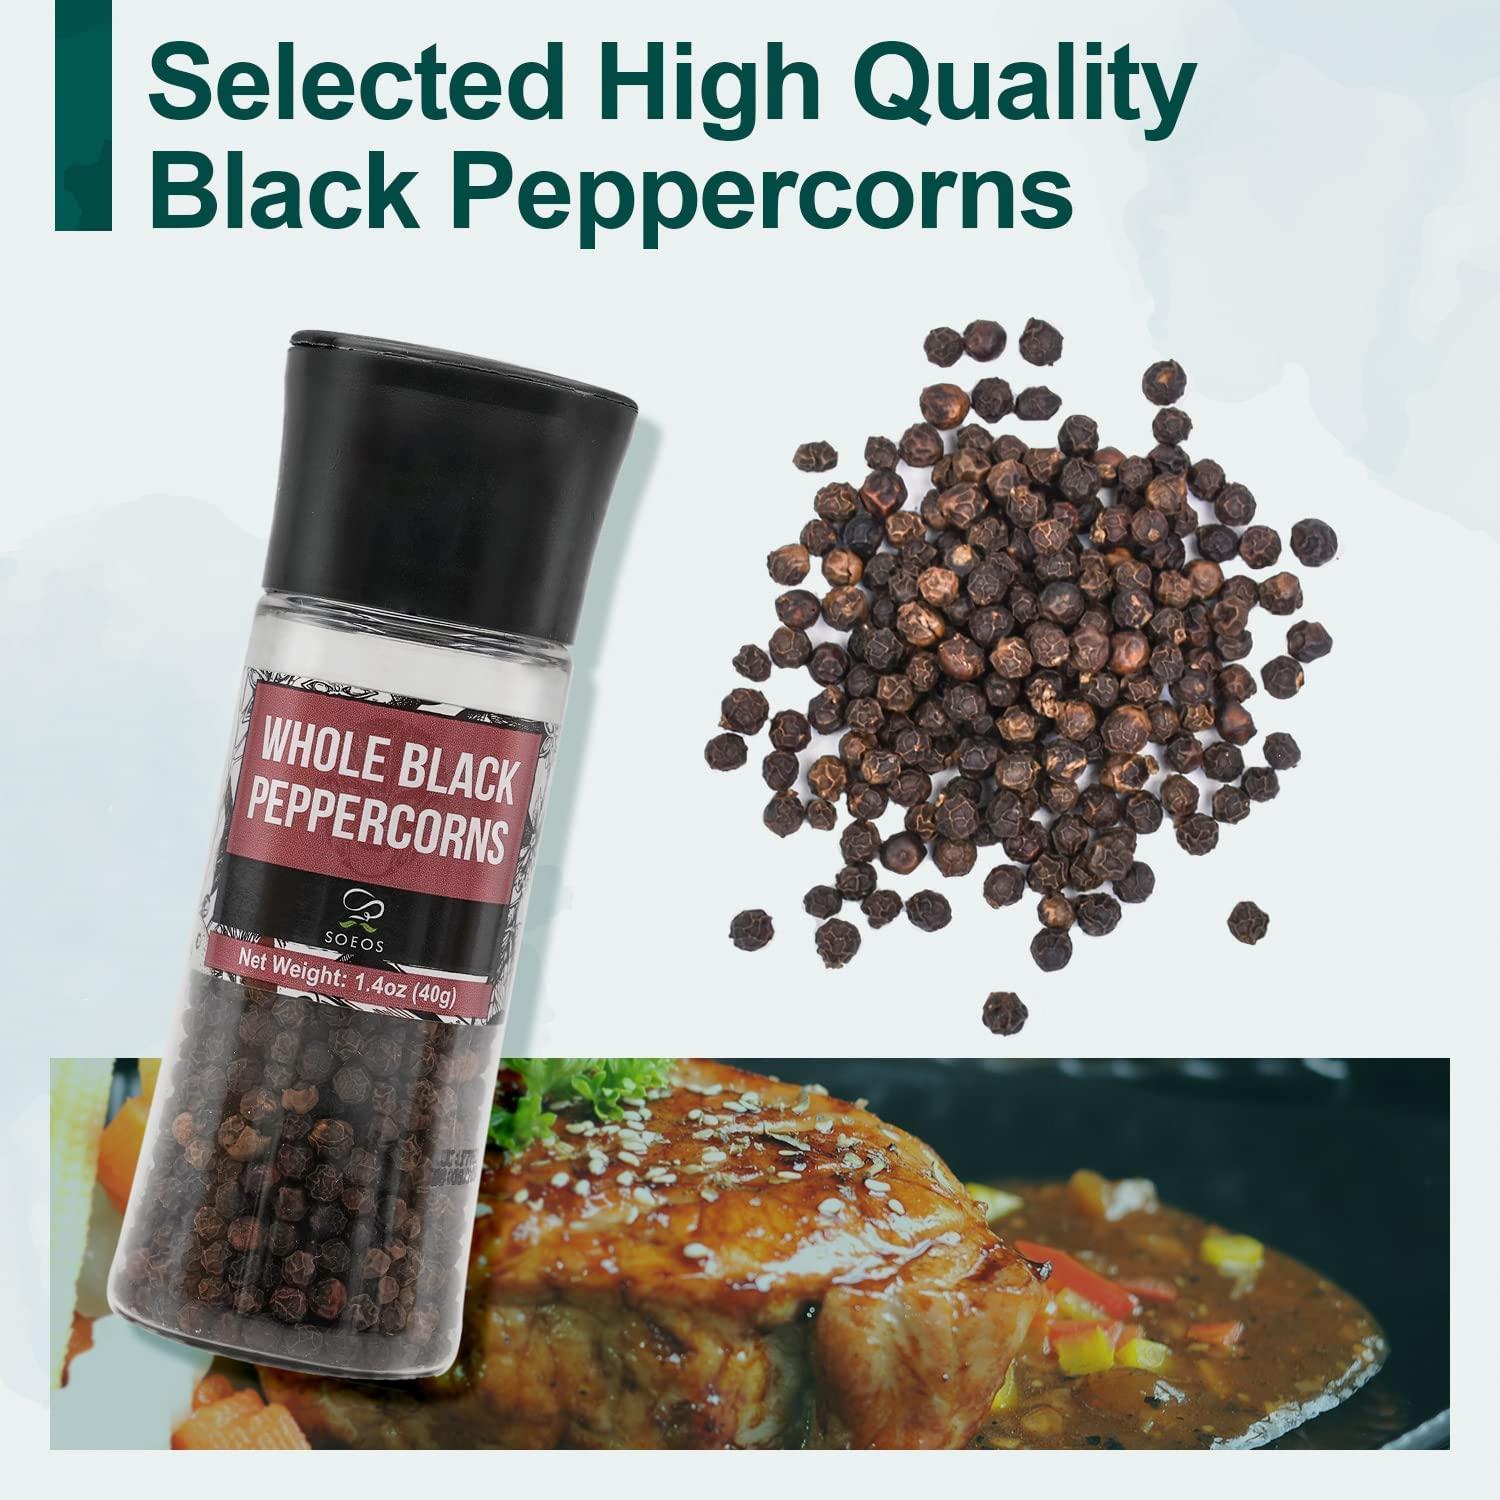 Disposable Black Peppercorn & Salt and Pepper Grinder Set